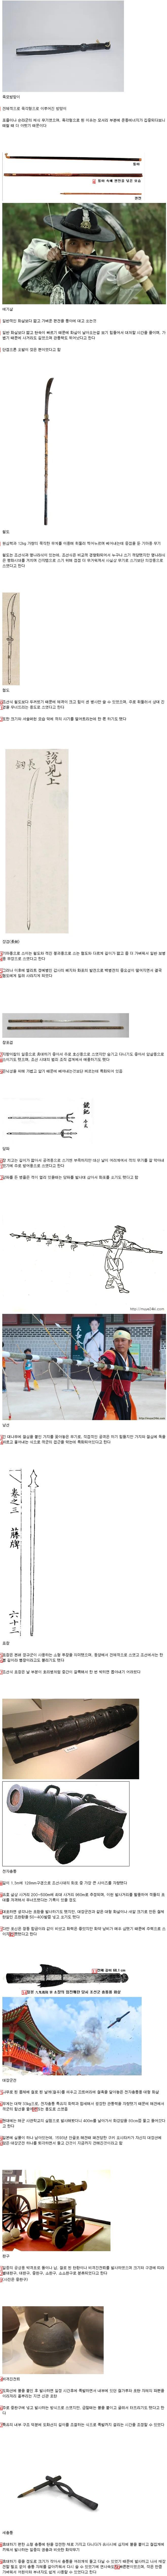 朝鮮時代の武器集